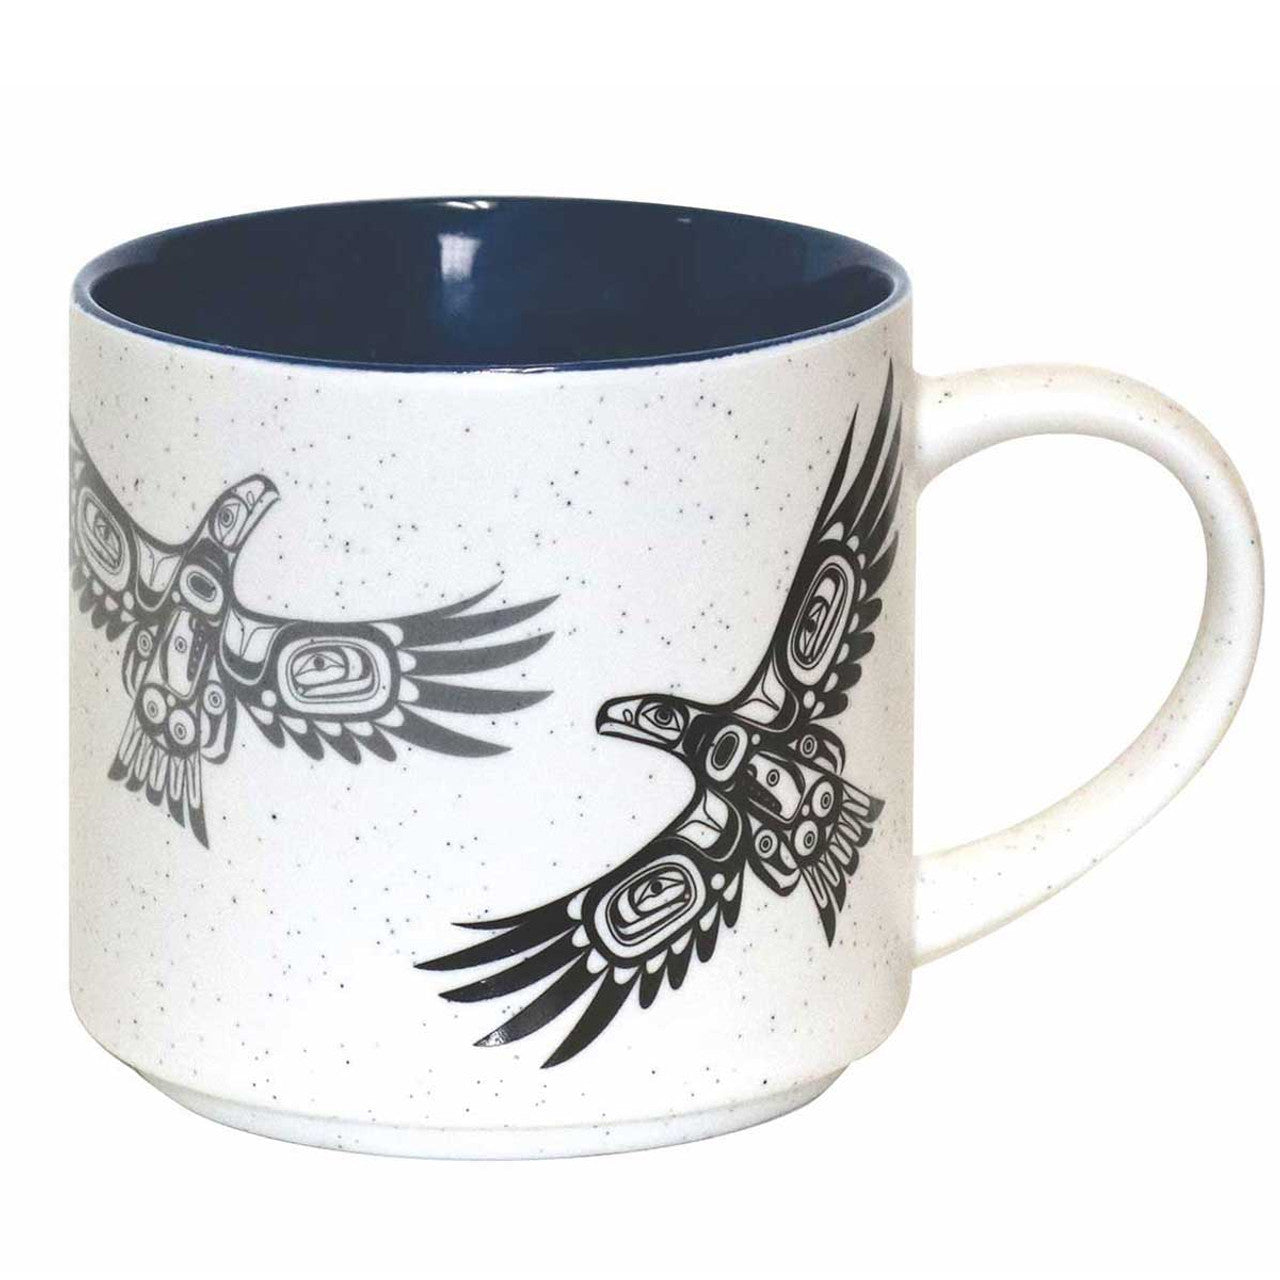 Soaring Eagle Ceramic Mug